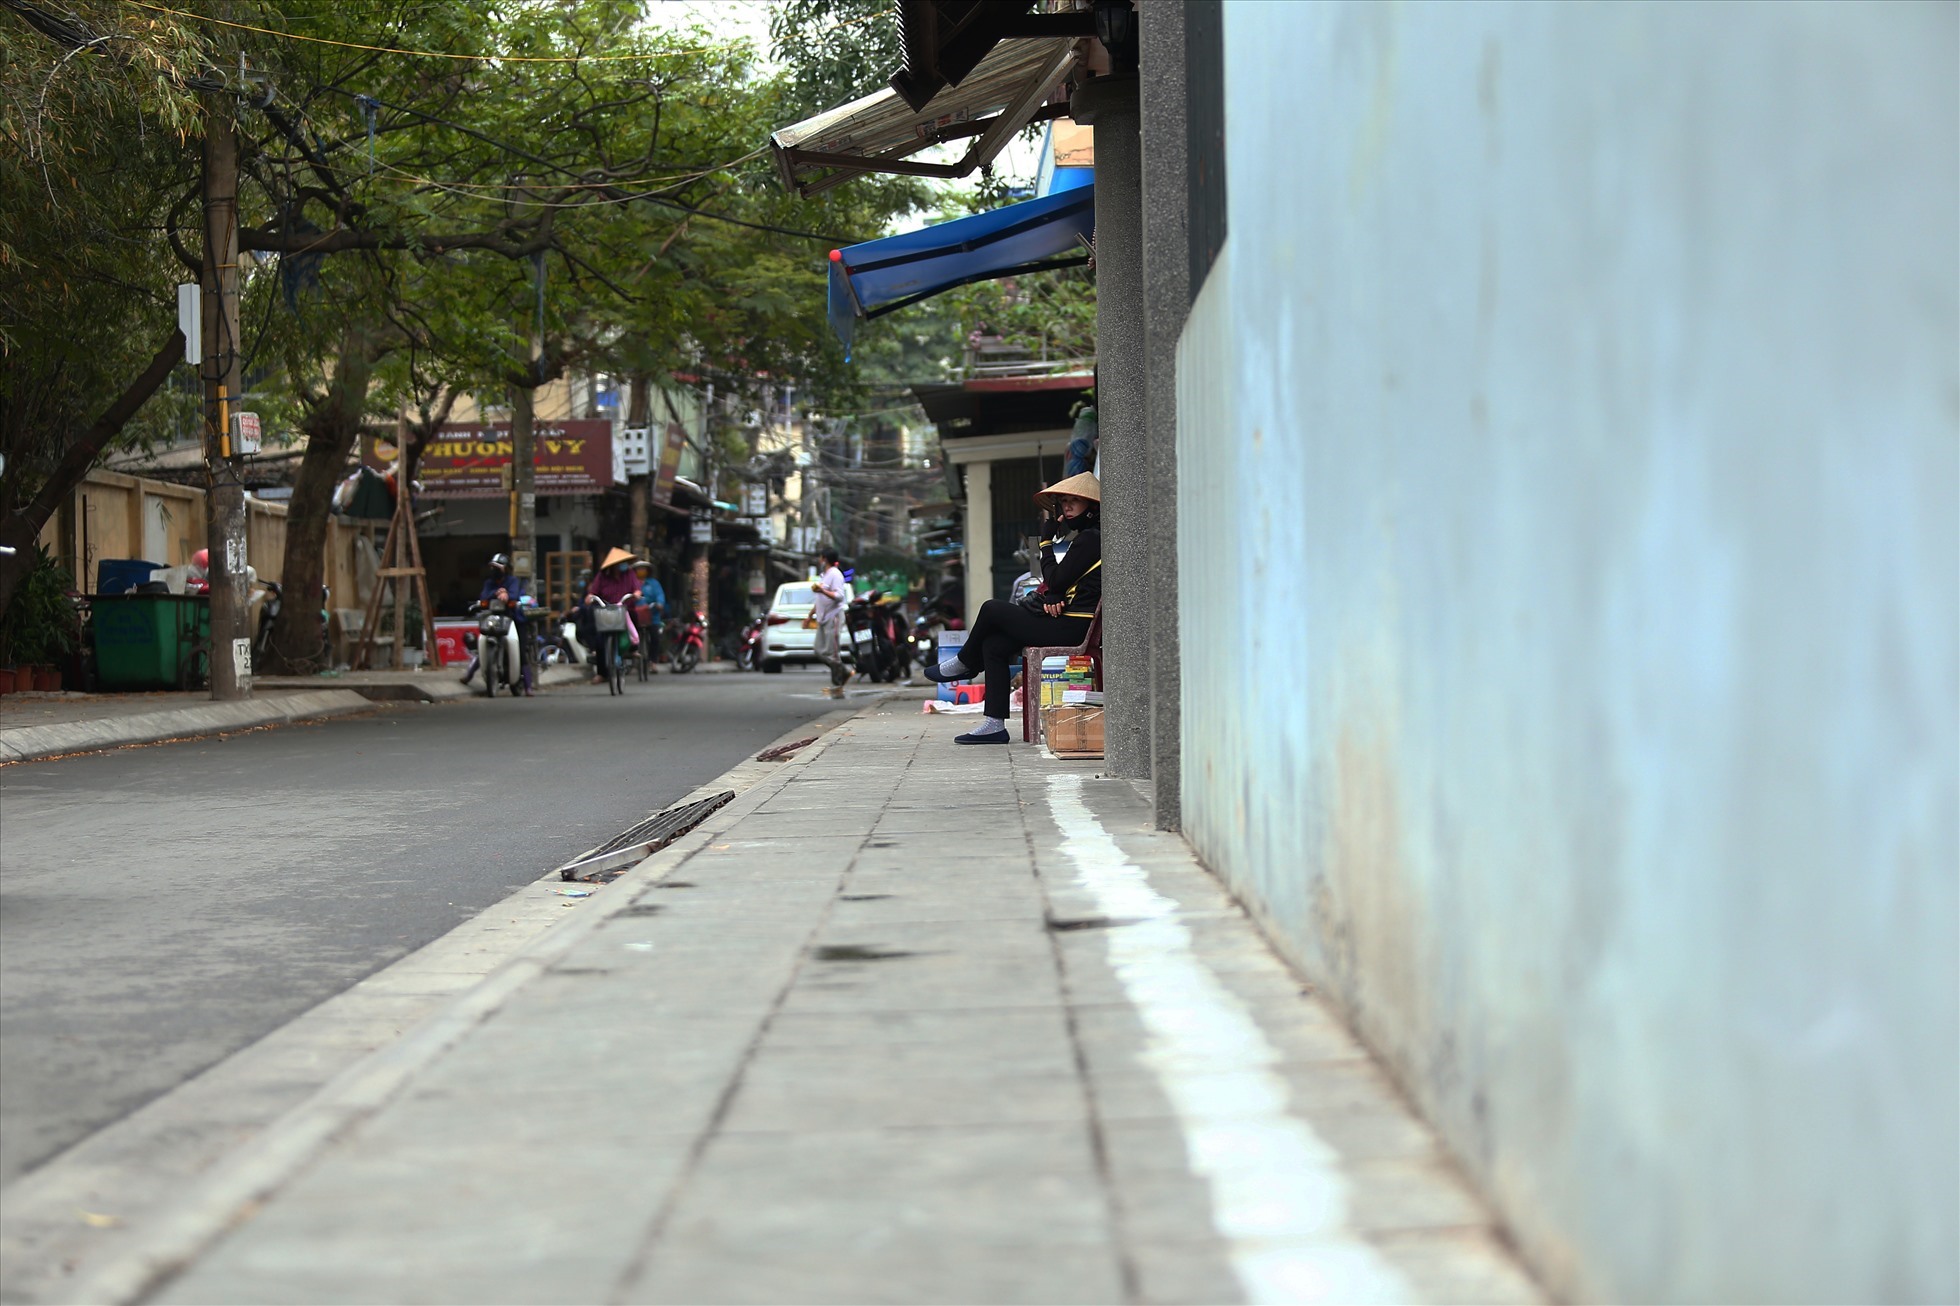 Vạch kẻ sơn dài khoảng 500m để xác định đường dành cho người đi bộ tại ngõ 116 Lương Thế Vinh. Ảnh: Vĩnh Hoàng